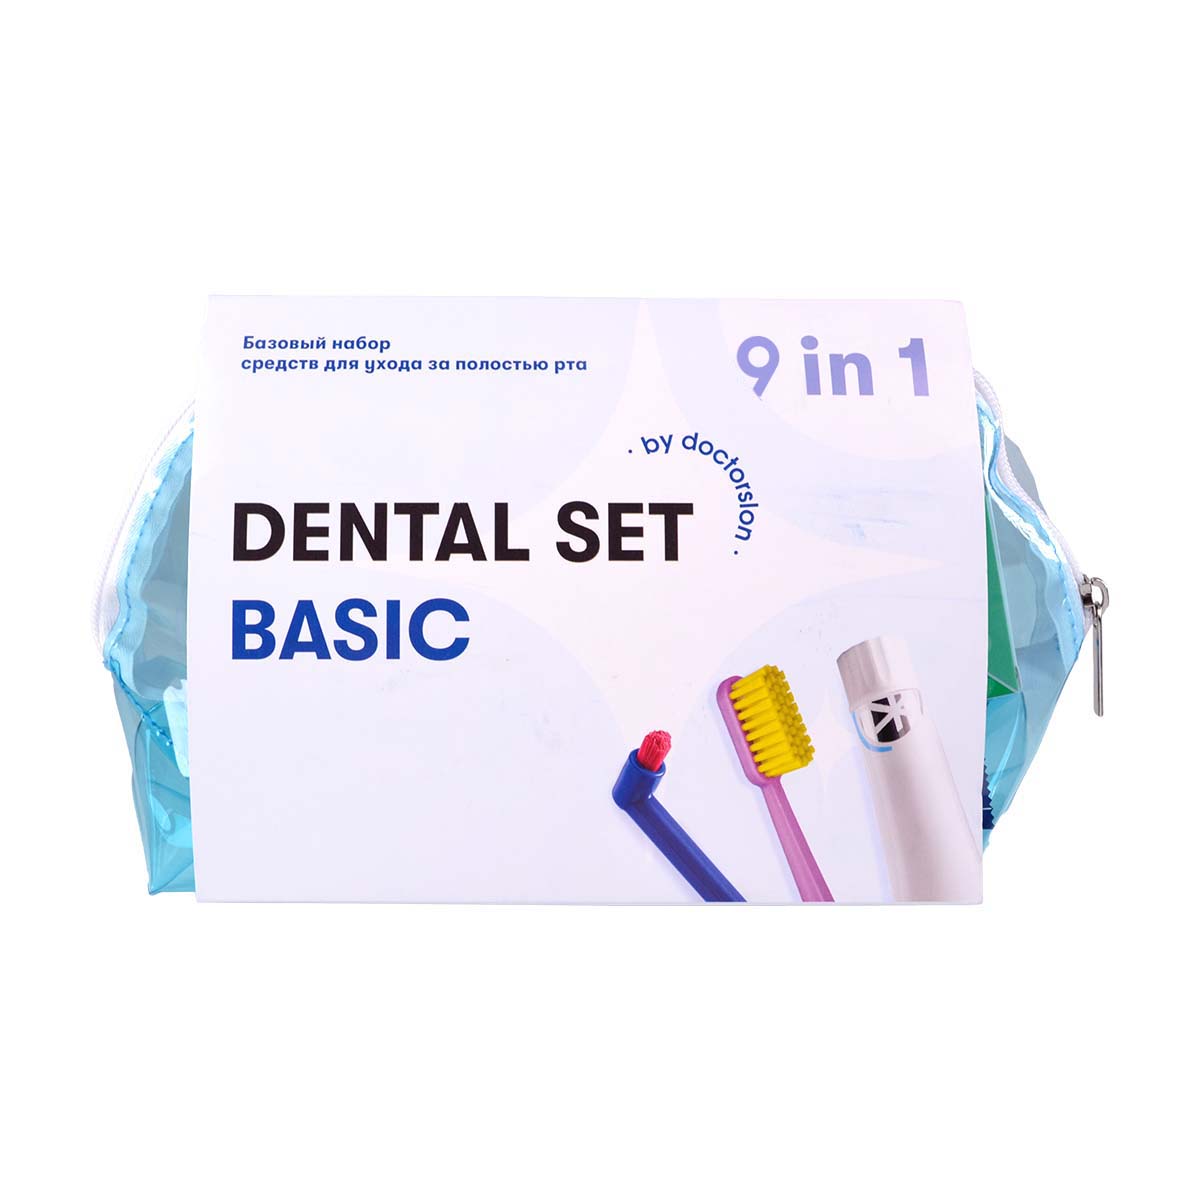 Готовый набор для гигиены Dental Box Dental Set basic готовый набор для гигиены dental box dental set basic